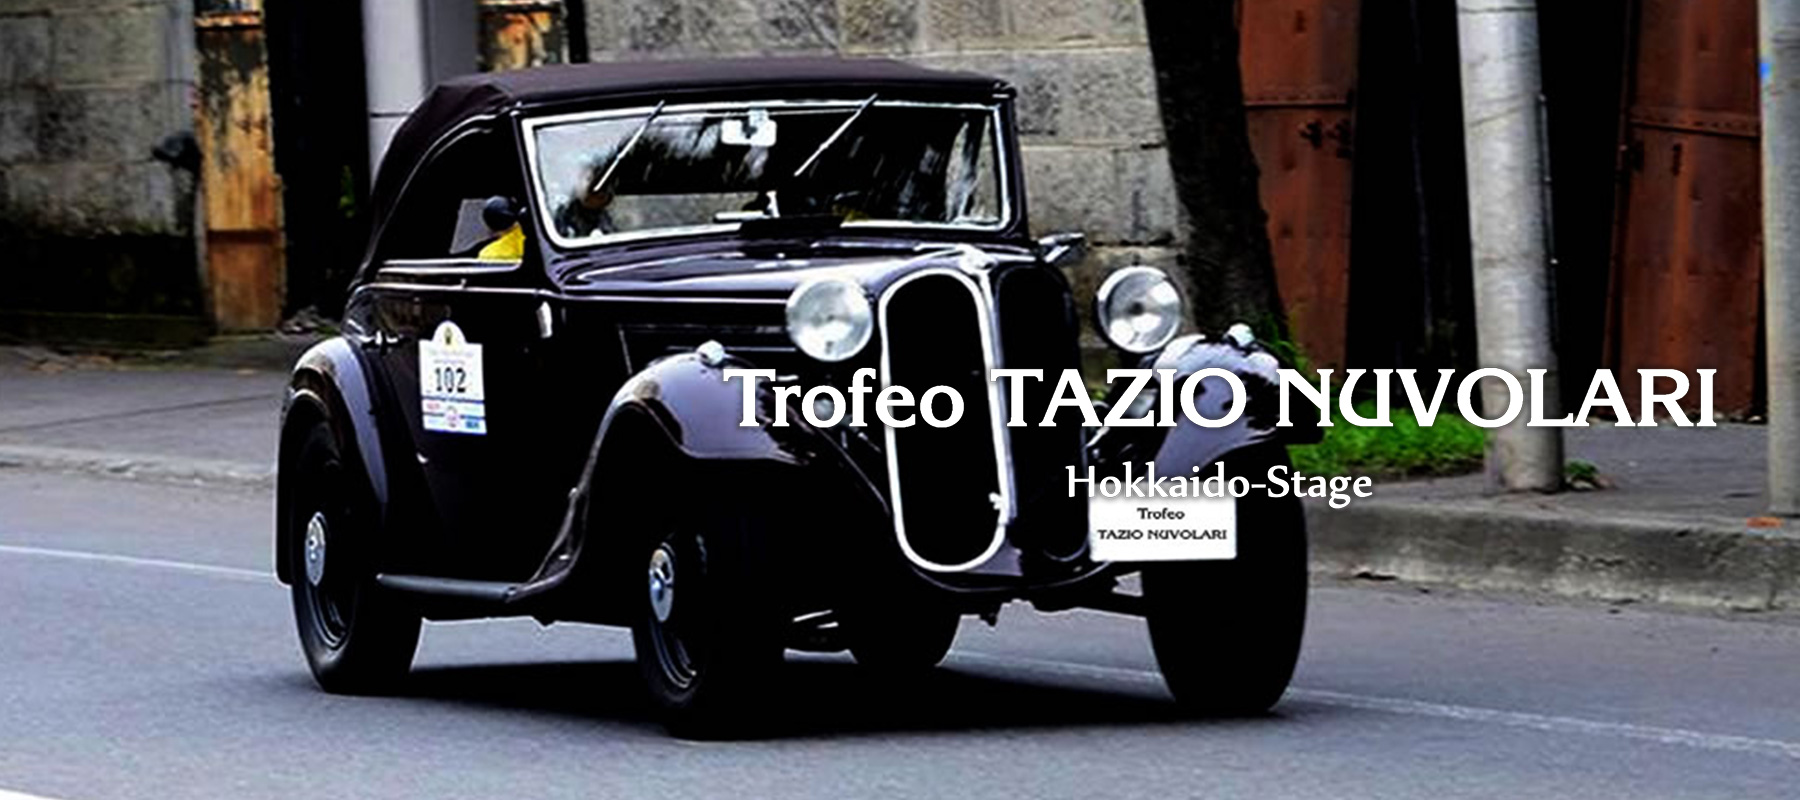 La 20th+1 Trofeo Tazio Nuvolari in Hokkaido-Stage